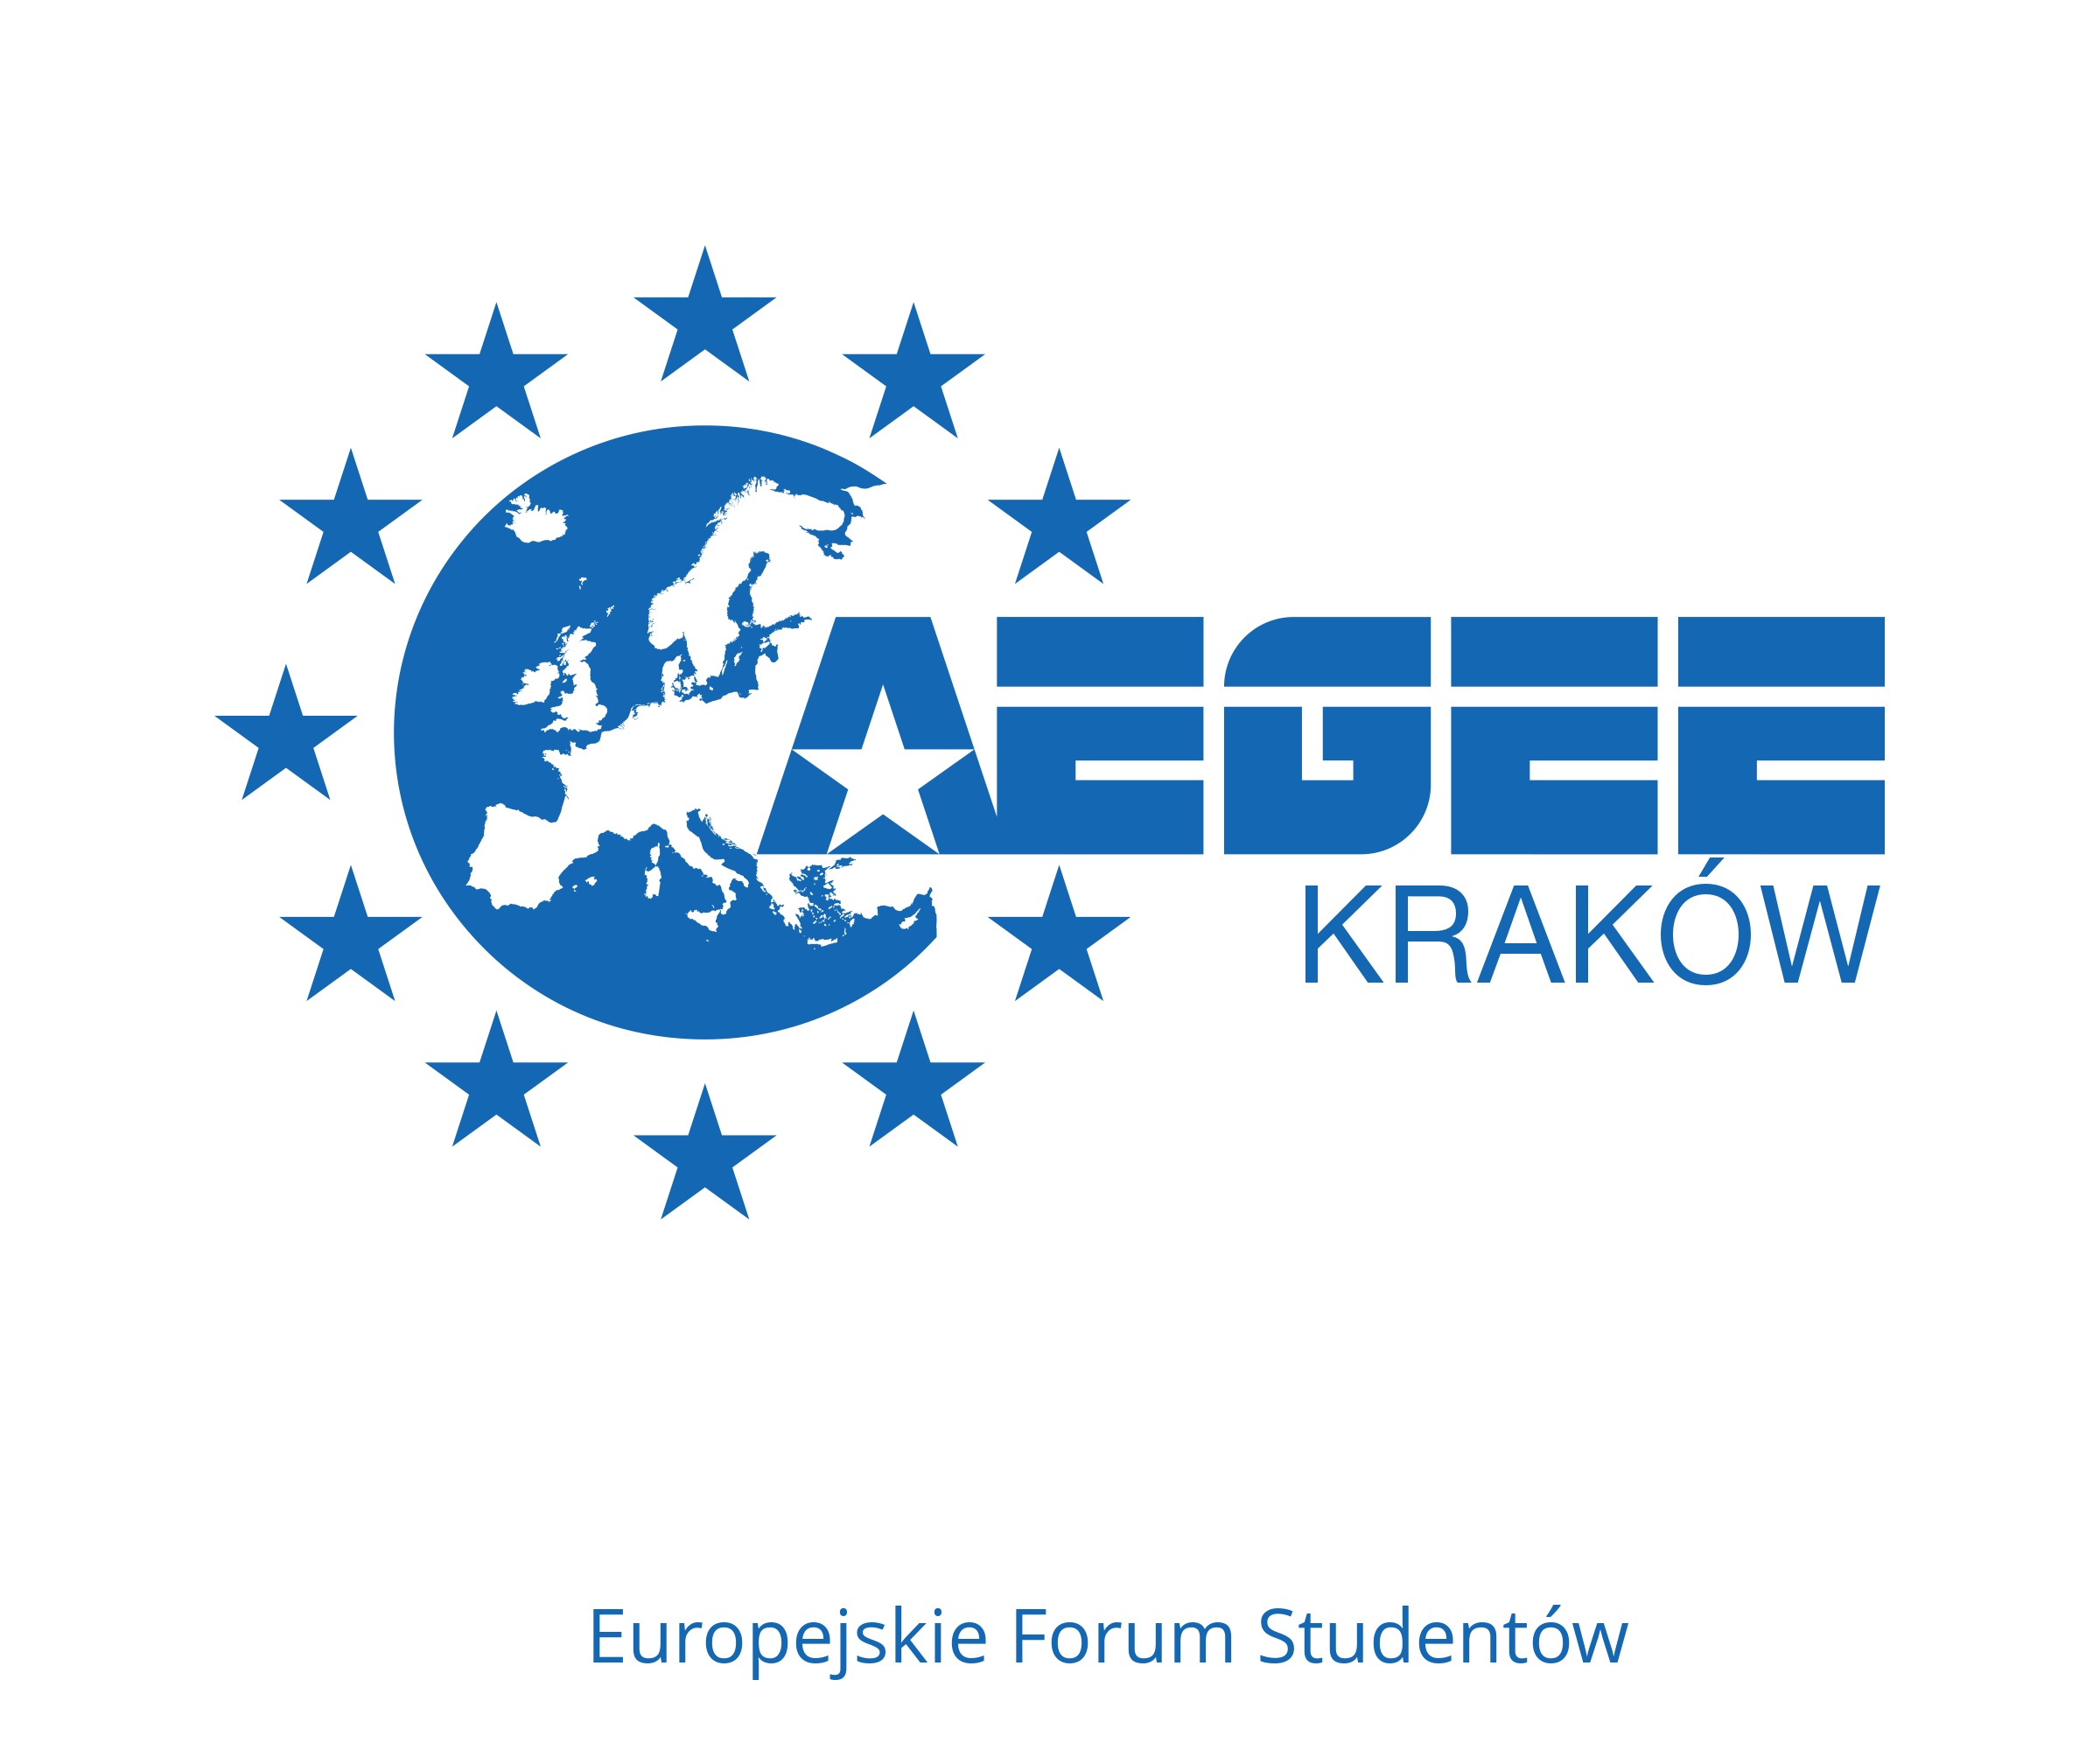 AEGEE - Logo